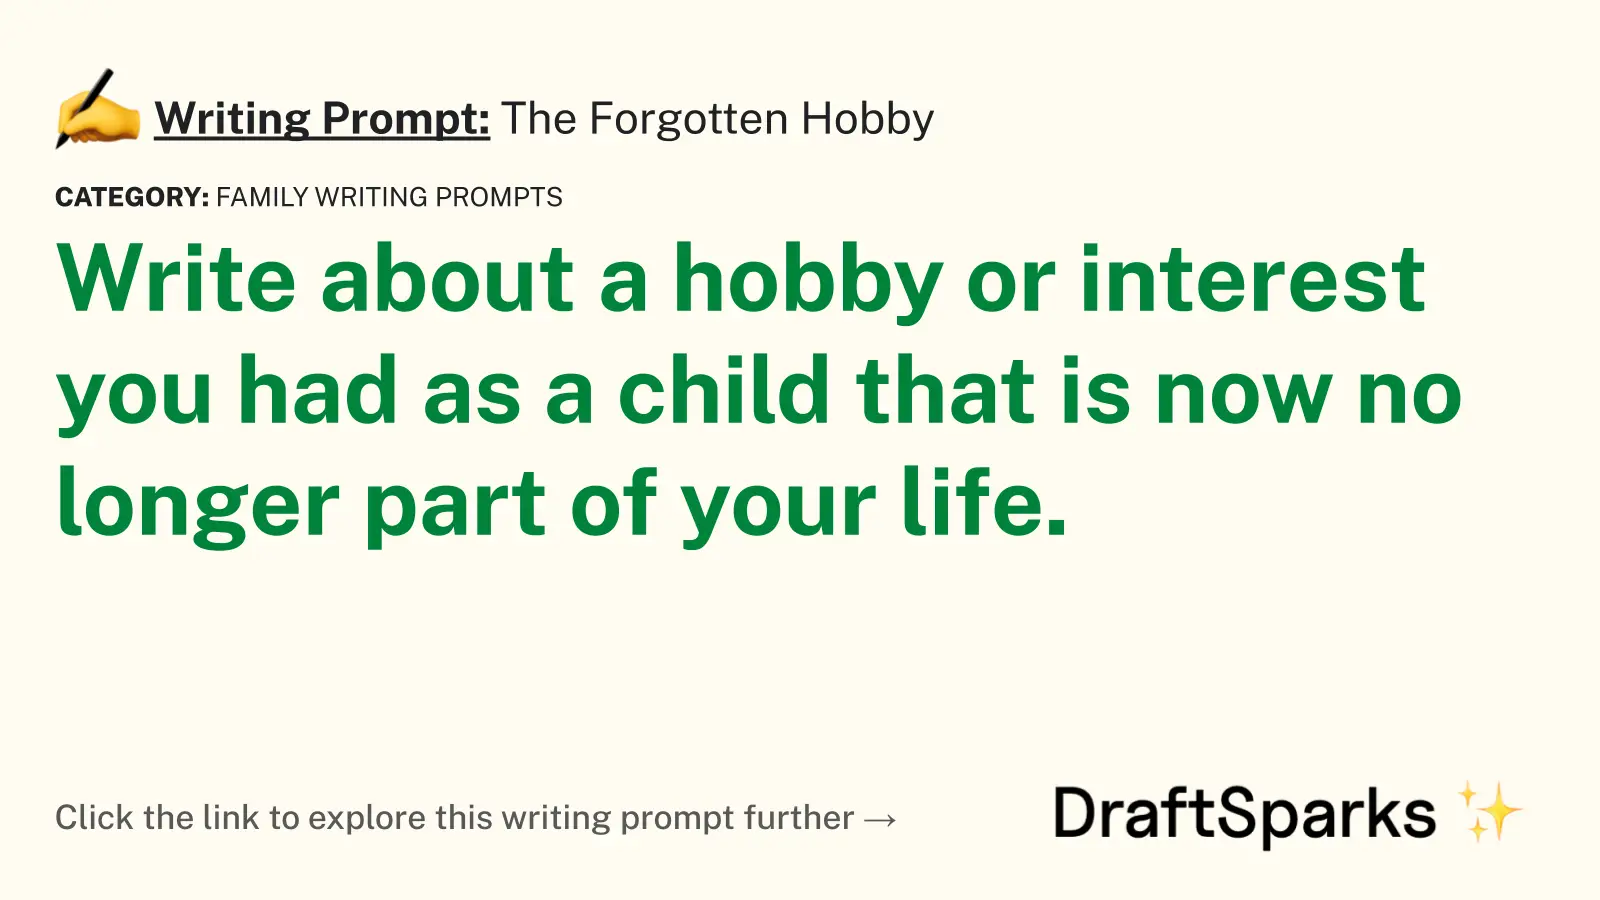 The Forgotten Hobby